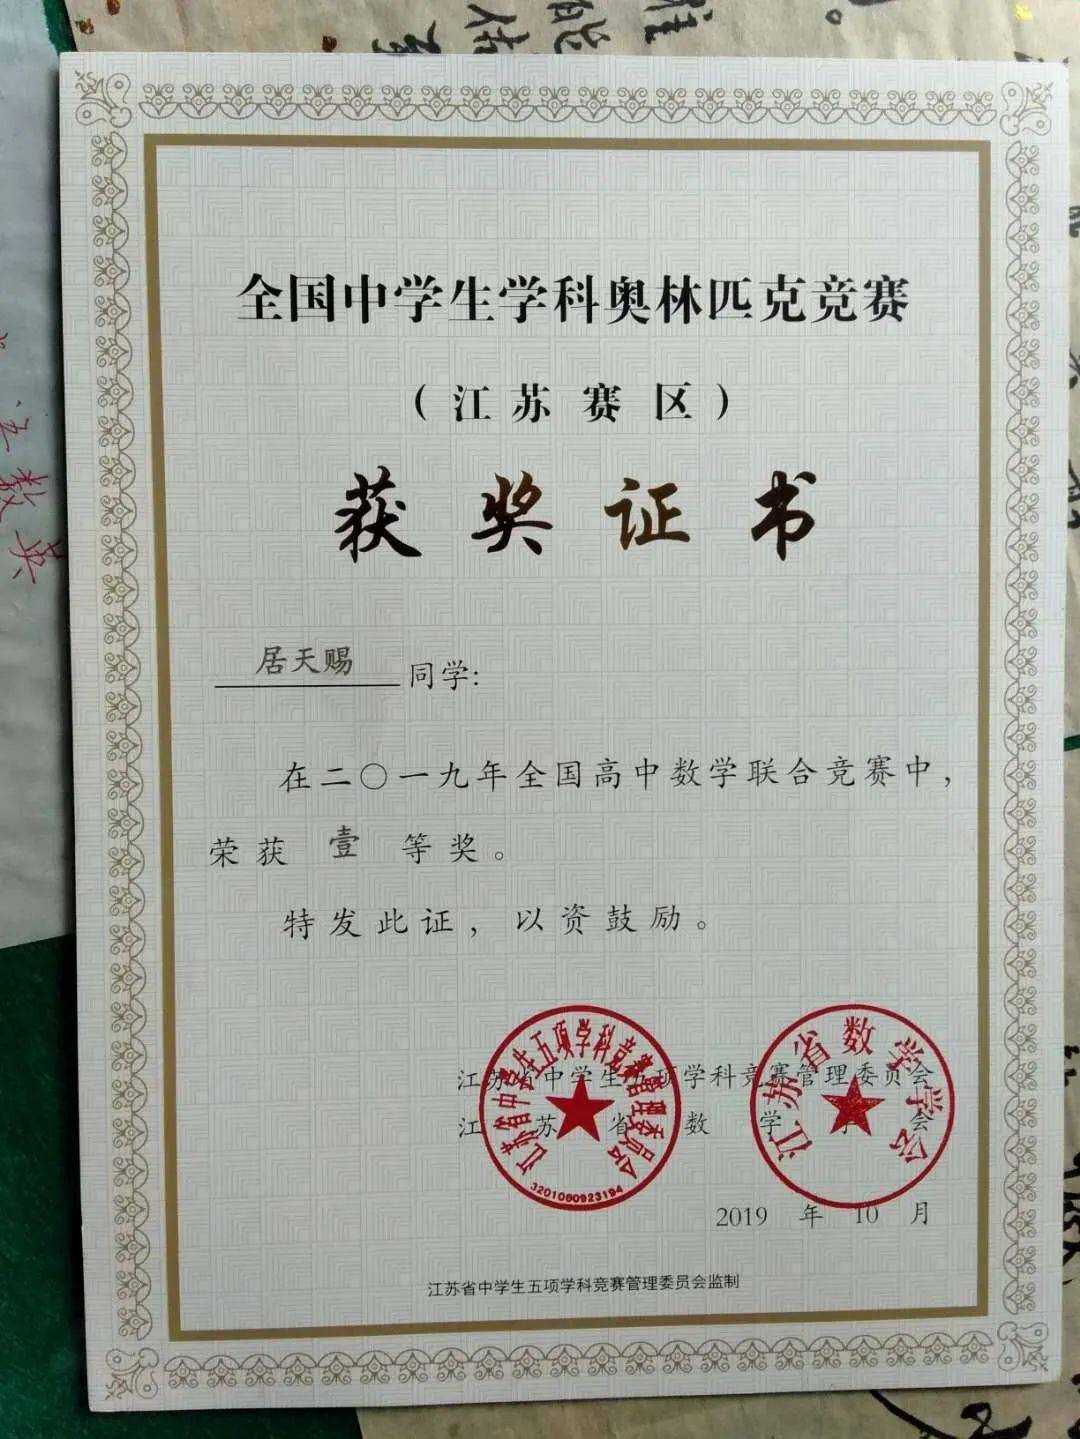 2019年江苏省奥林匹克数学竞赛一等奖幼儿园阶段属于孩子们一生中最为